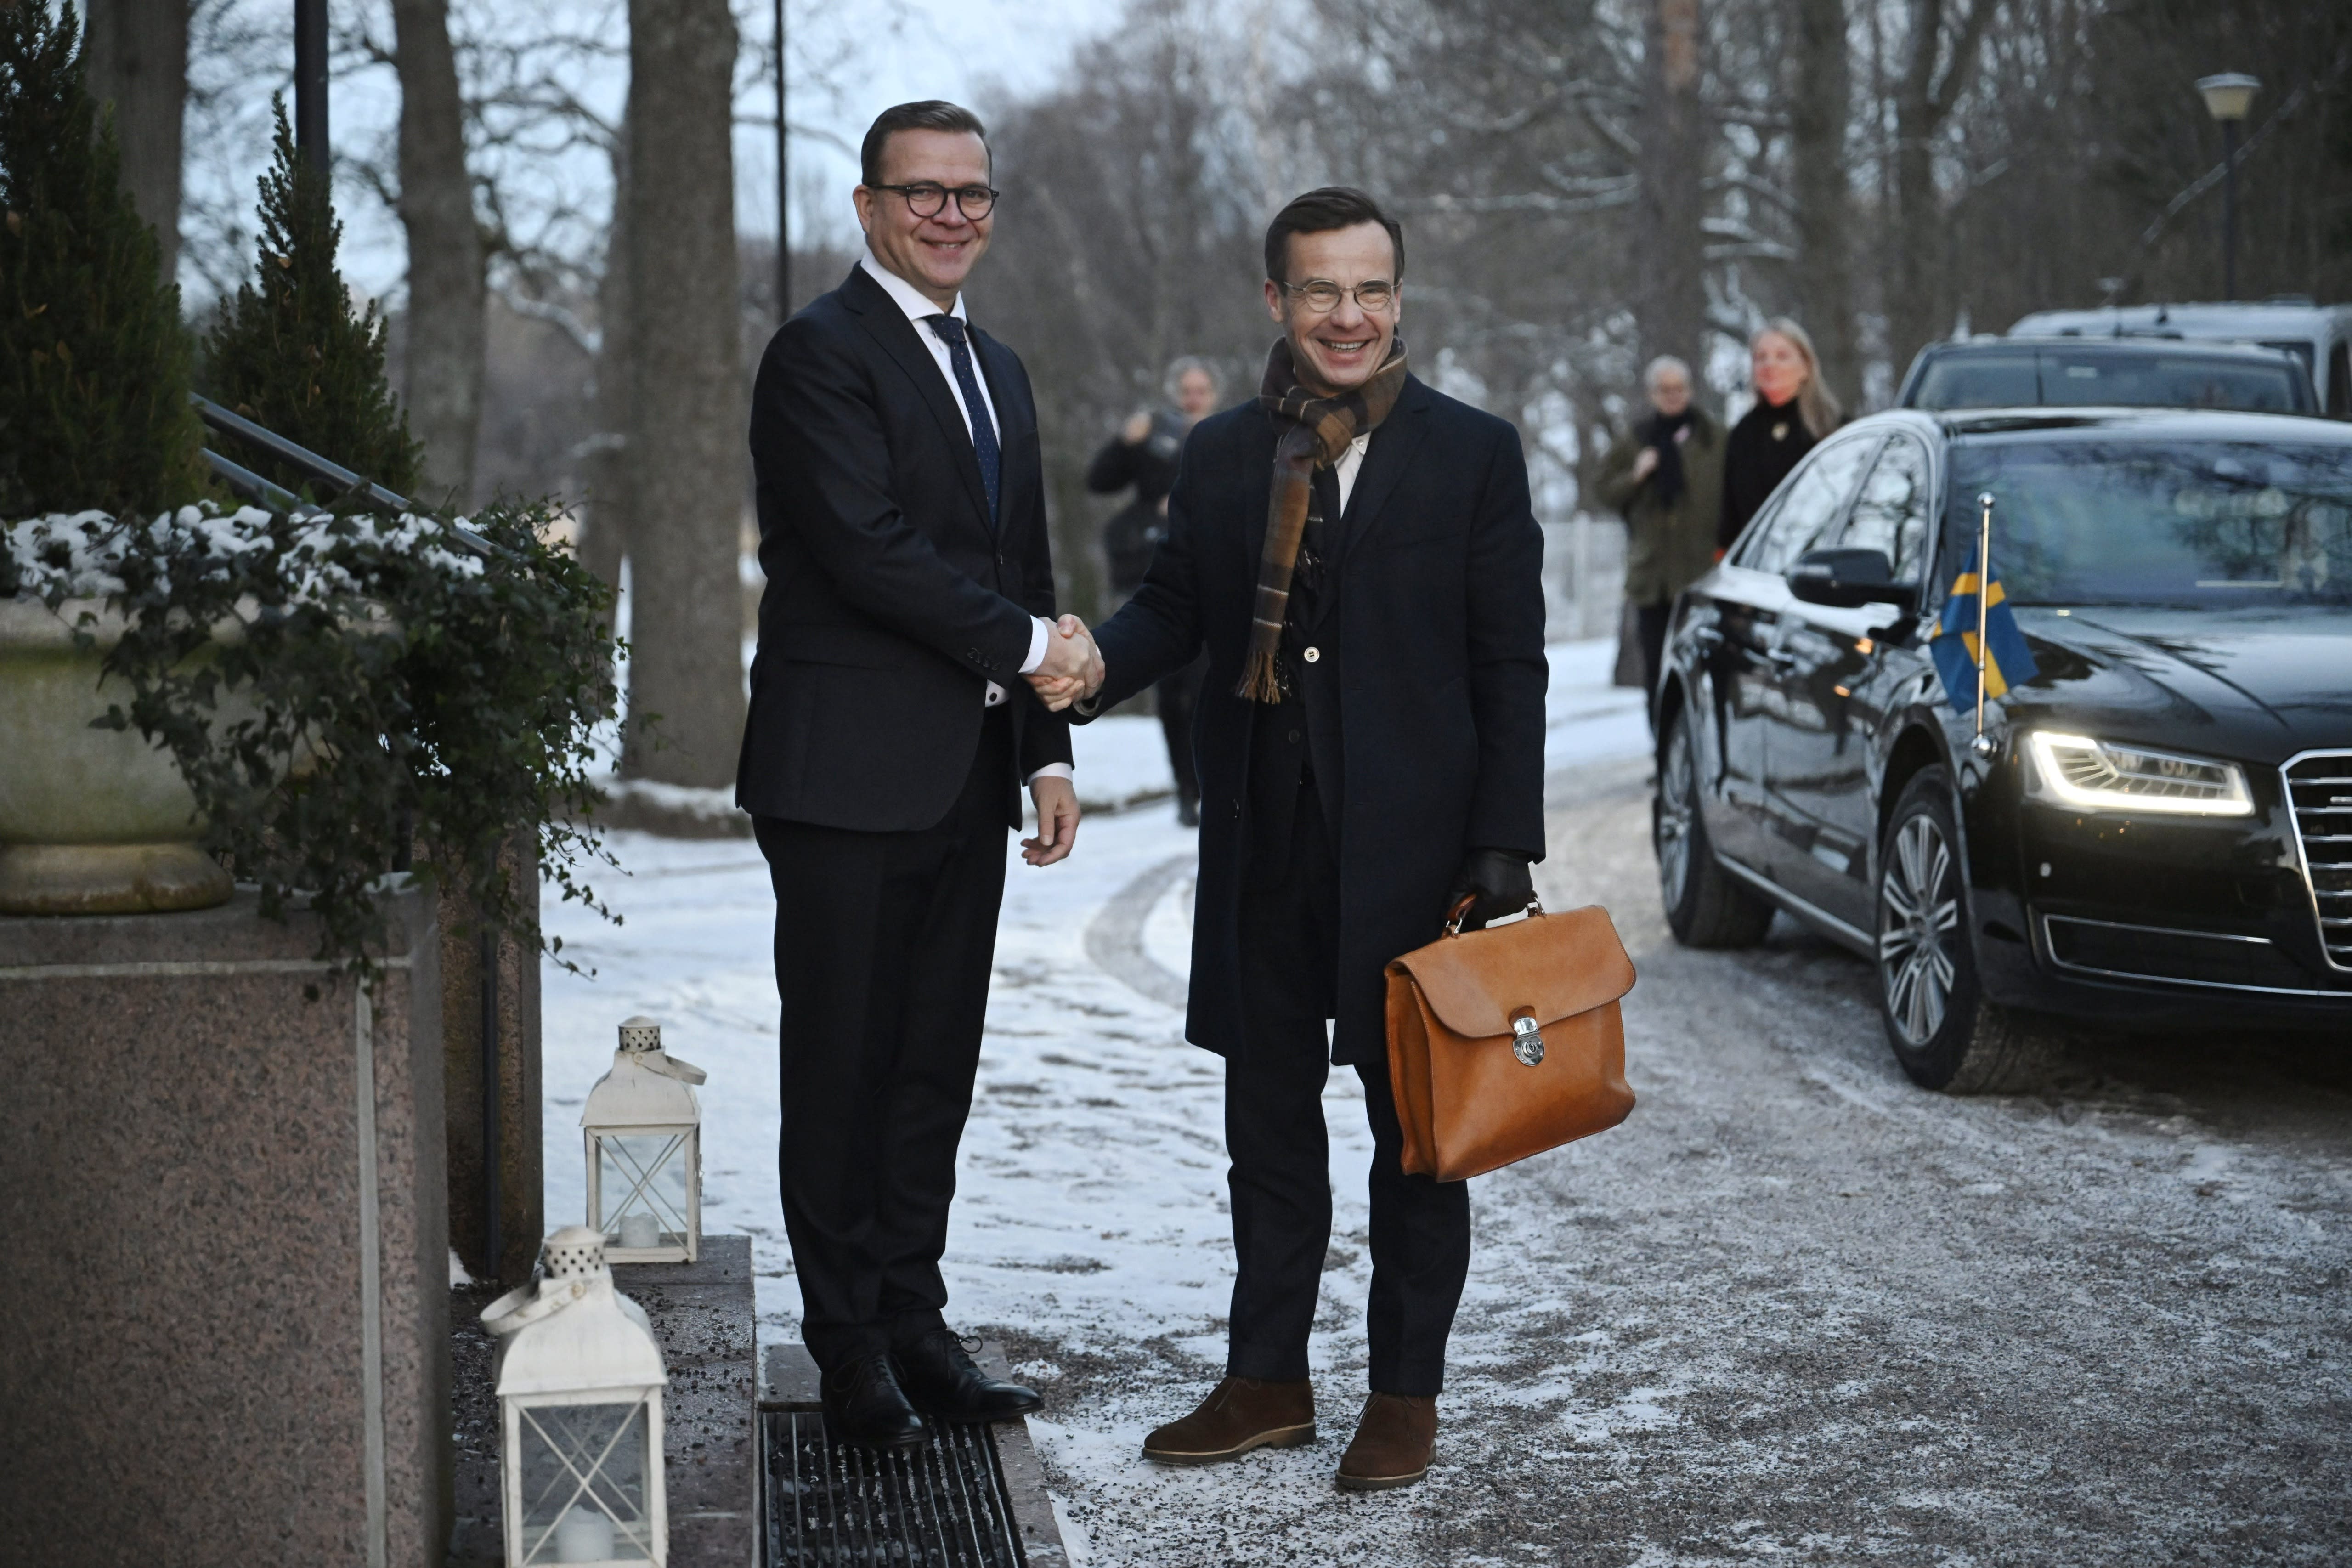 スウェーデンは国境問題でフィンランドを支援する用意があるとクリスターソン首相が語る